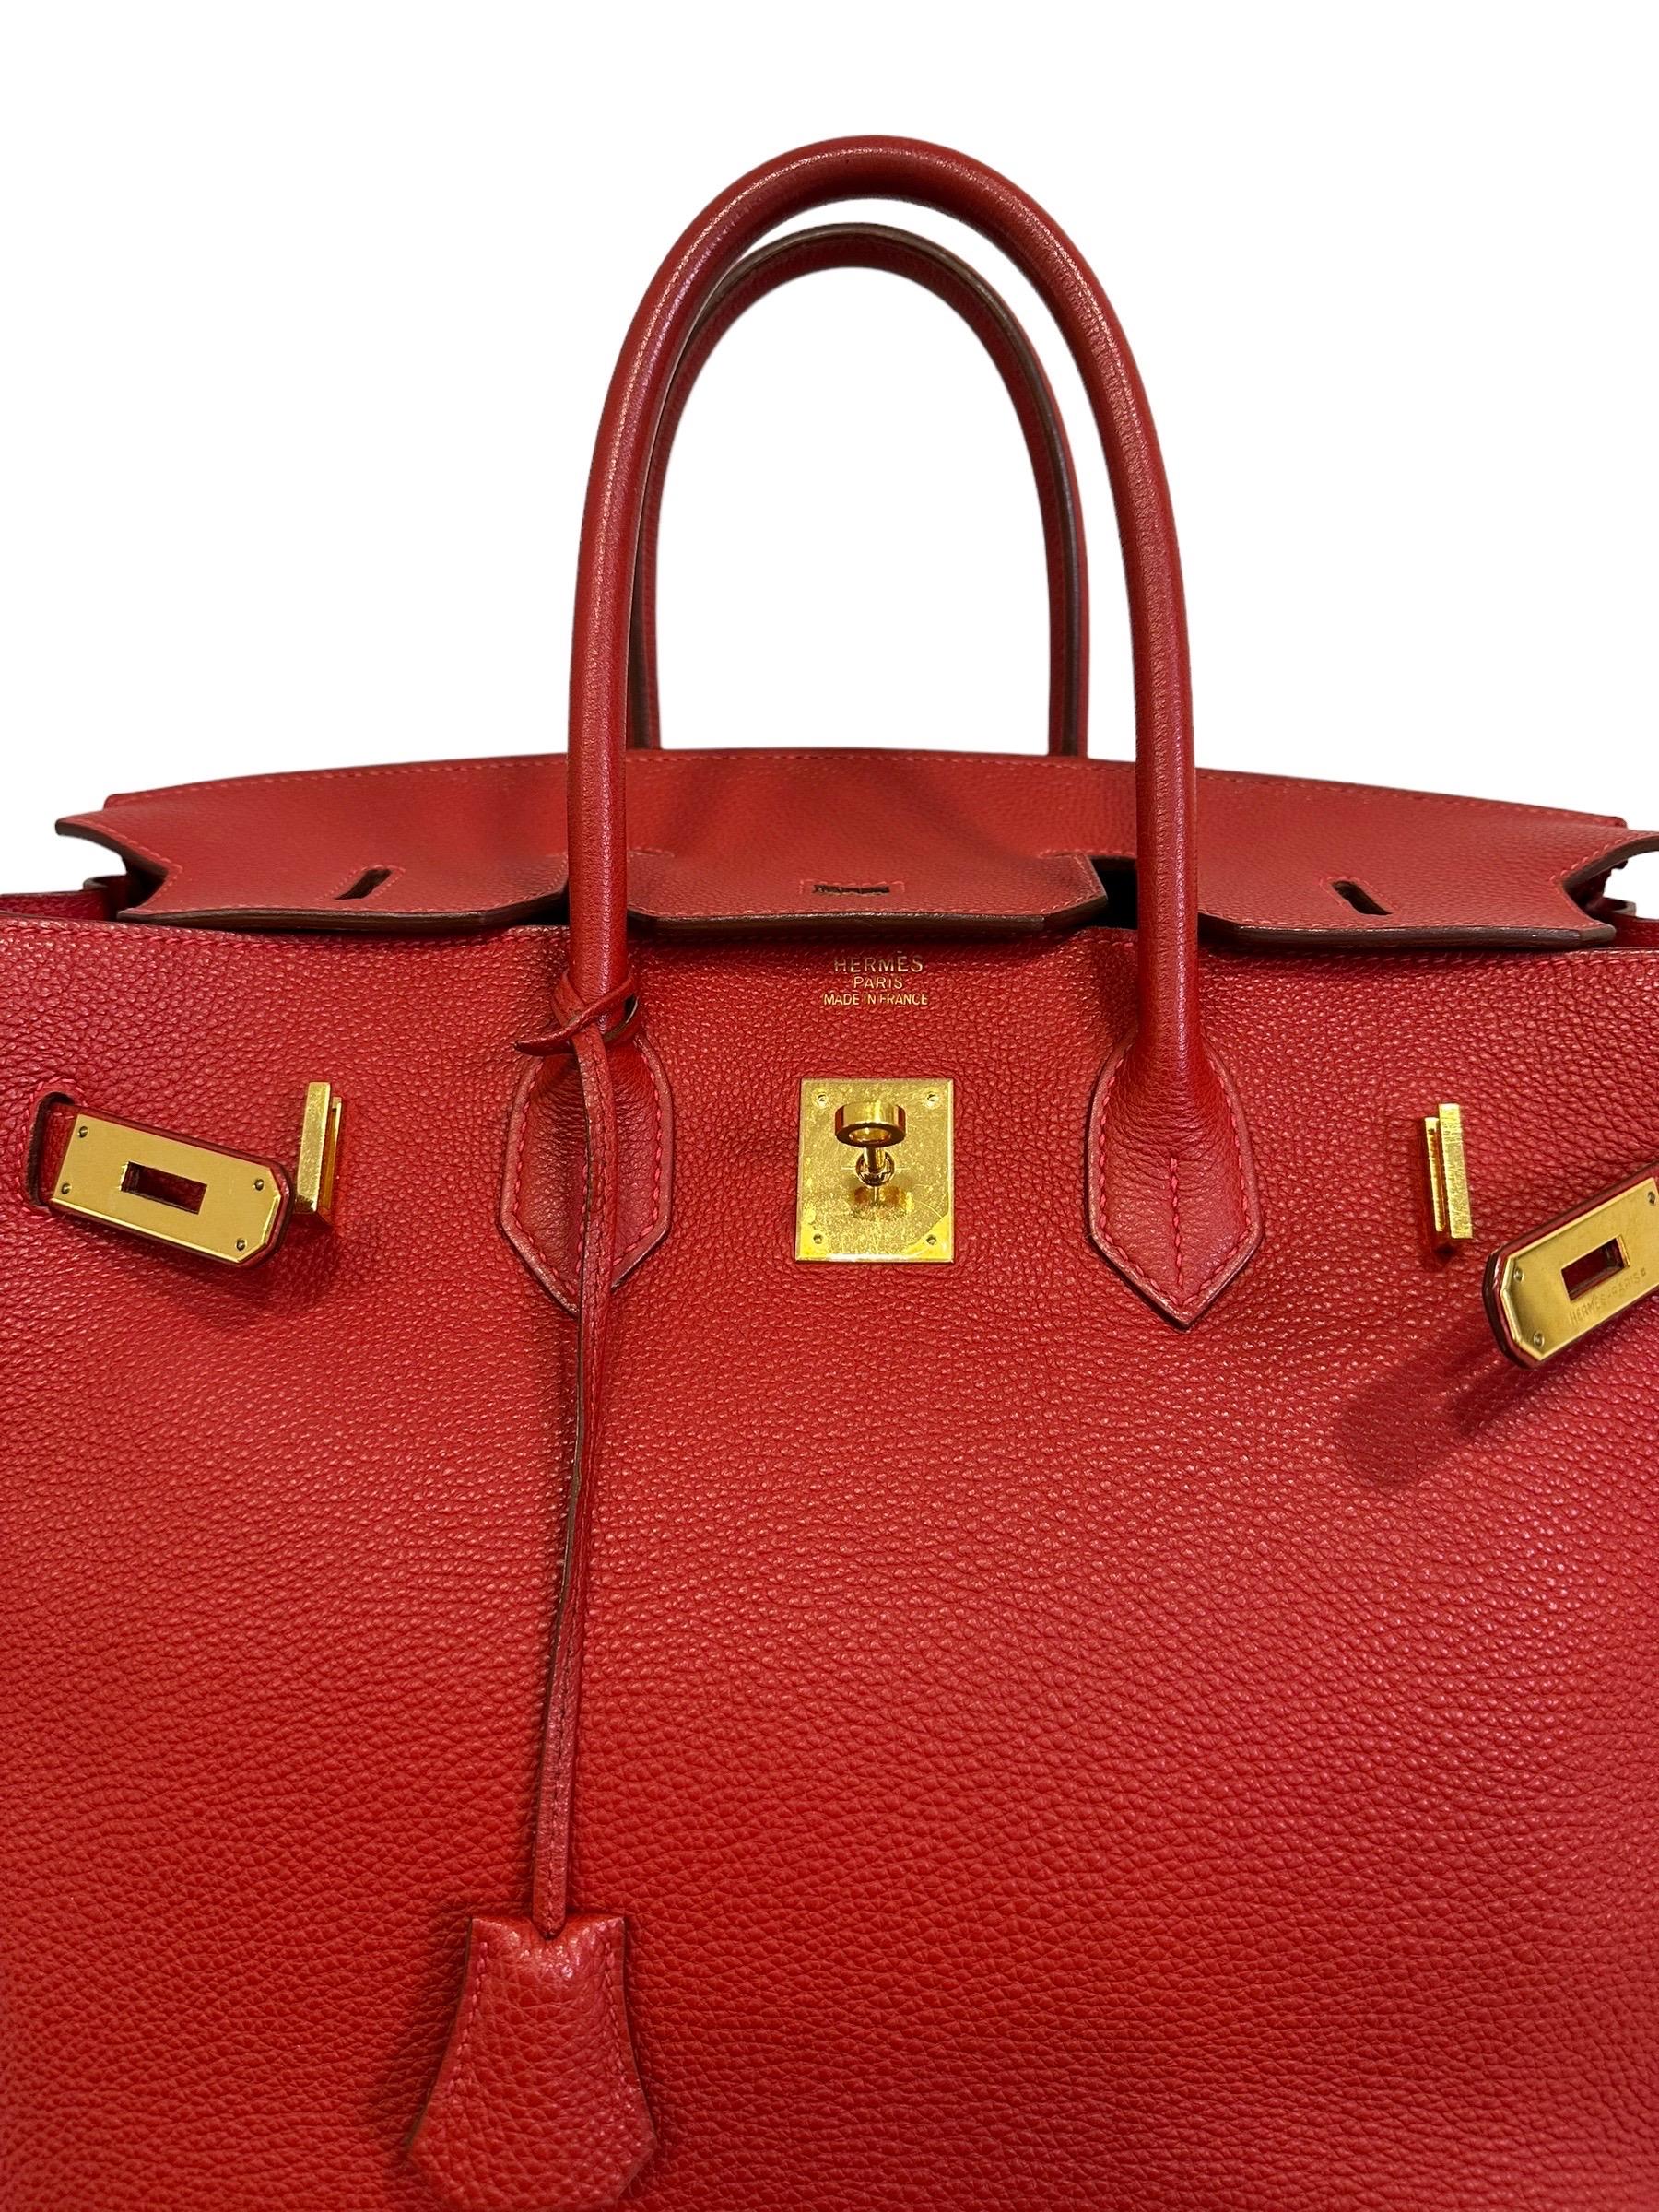 2004 Hermès Birkin 35 Fjord Leder Rouge Geranium Top Handle Bag  6